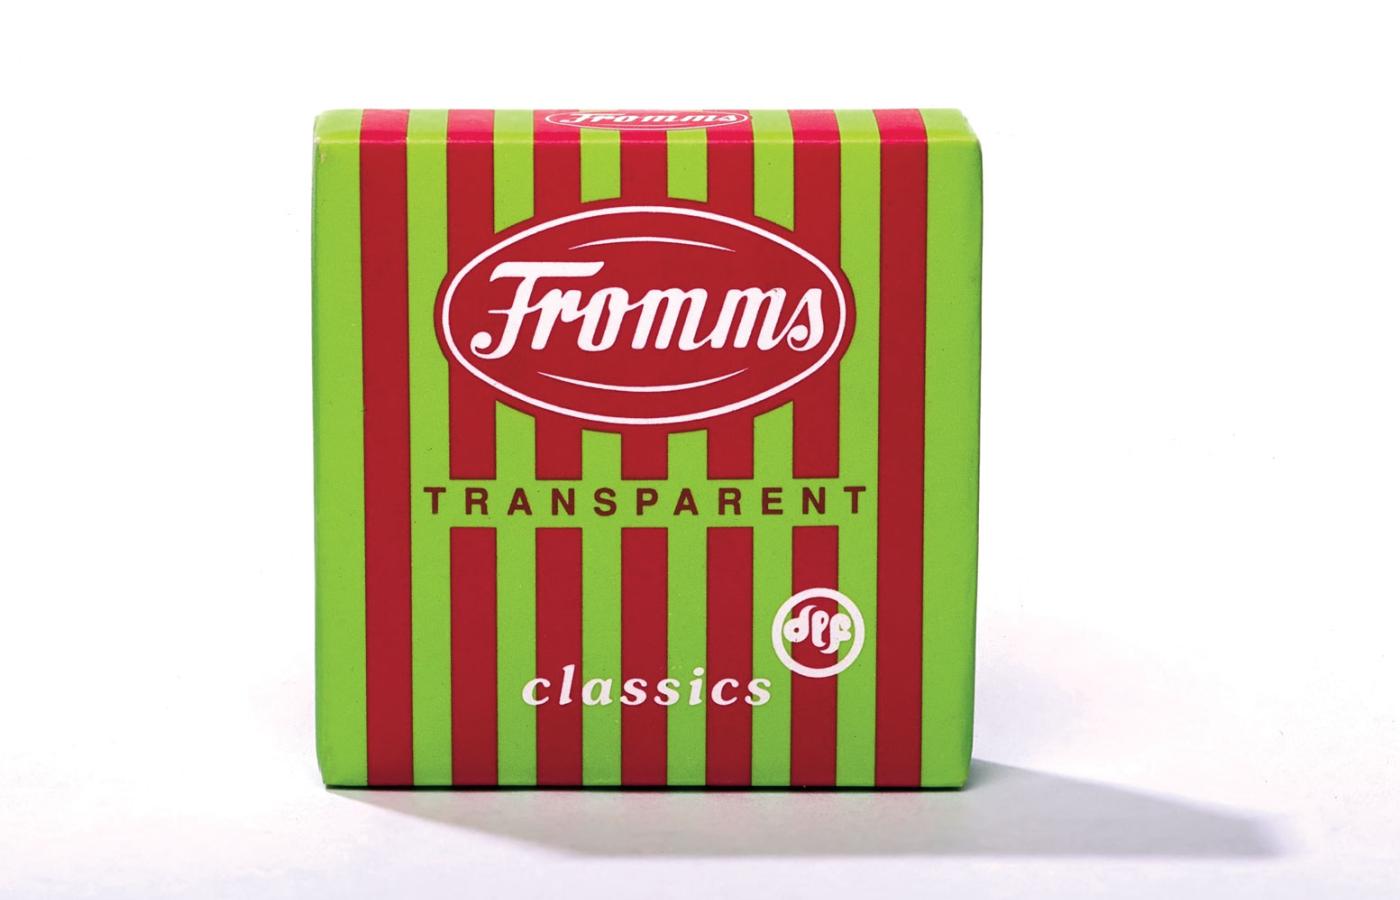 Pudełko produkowanych przez firmę Fromma prezerwatyw